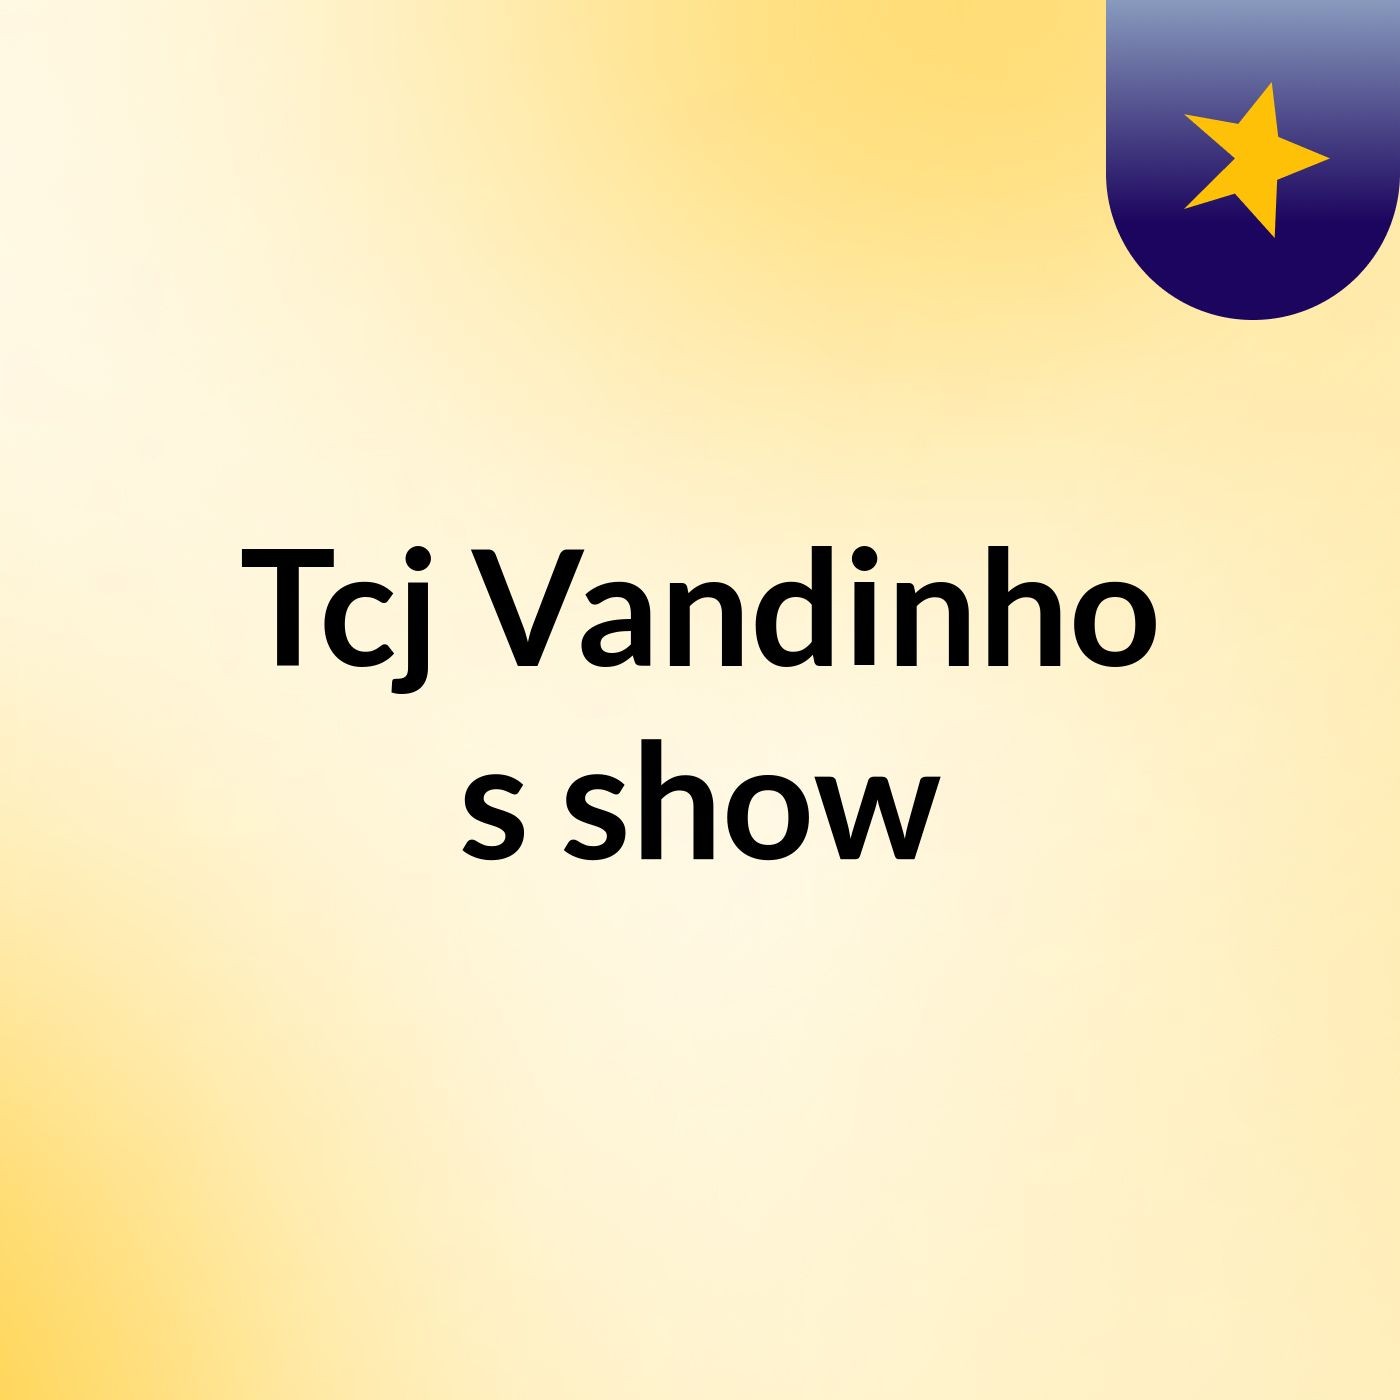 Tcj Vandinho's show